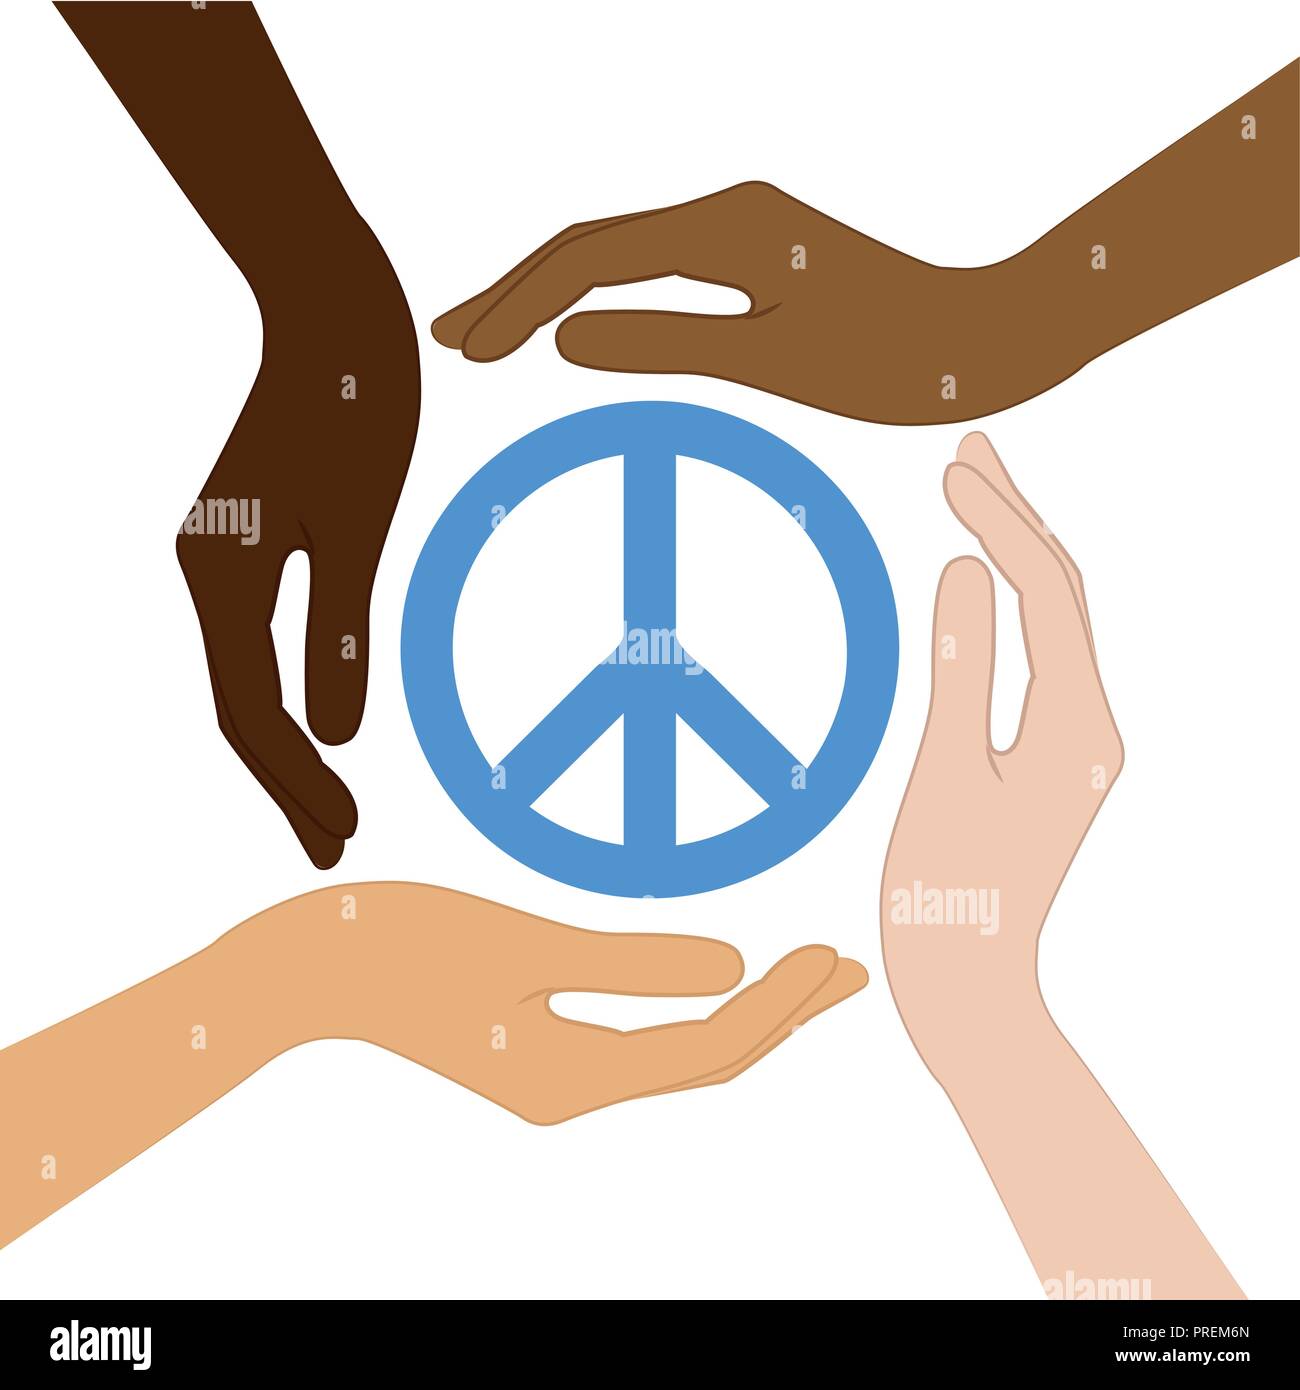 Peace Symbol in der Mitte der menschlichen Hände verschiedene Hautfarben Vektor-illustration EPS 10. Stock Vektor